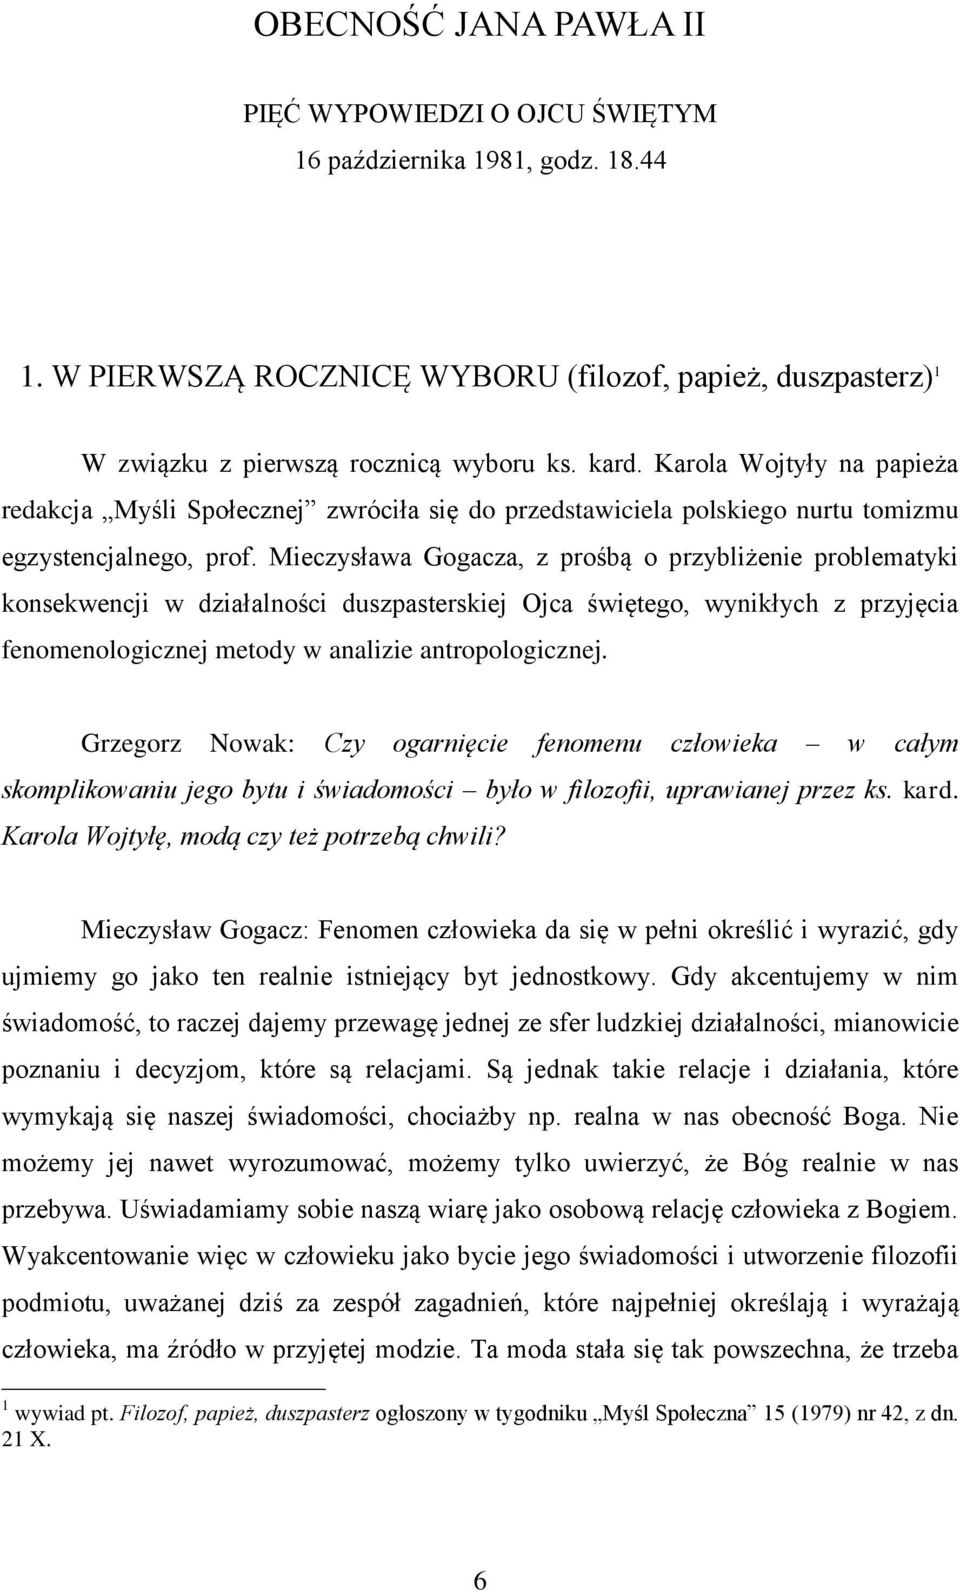 Mieczysława Gogacza, z prośbą o przybliżenie problematyki konsekwencji w działalności duszpasterskiej Ojca świętego, wynikłych z przyjęcia fenomenologicznej metody w analizie antropologicznej.